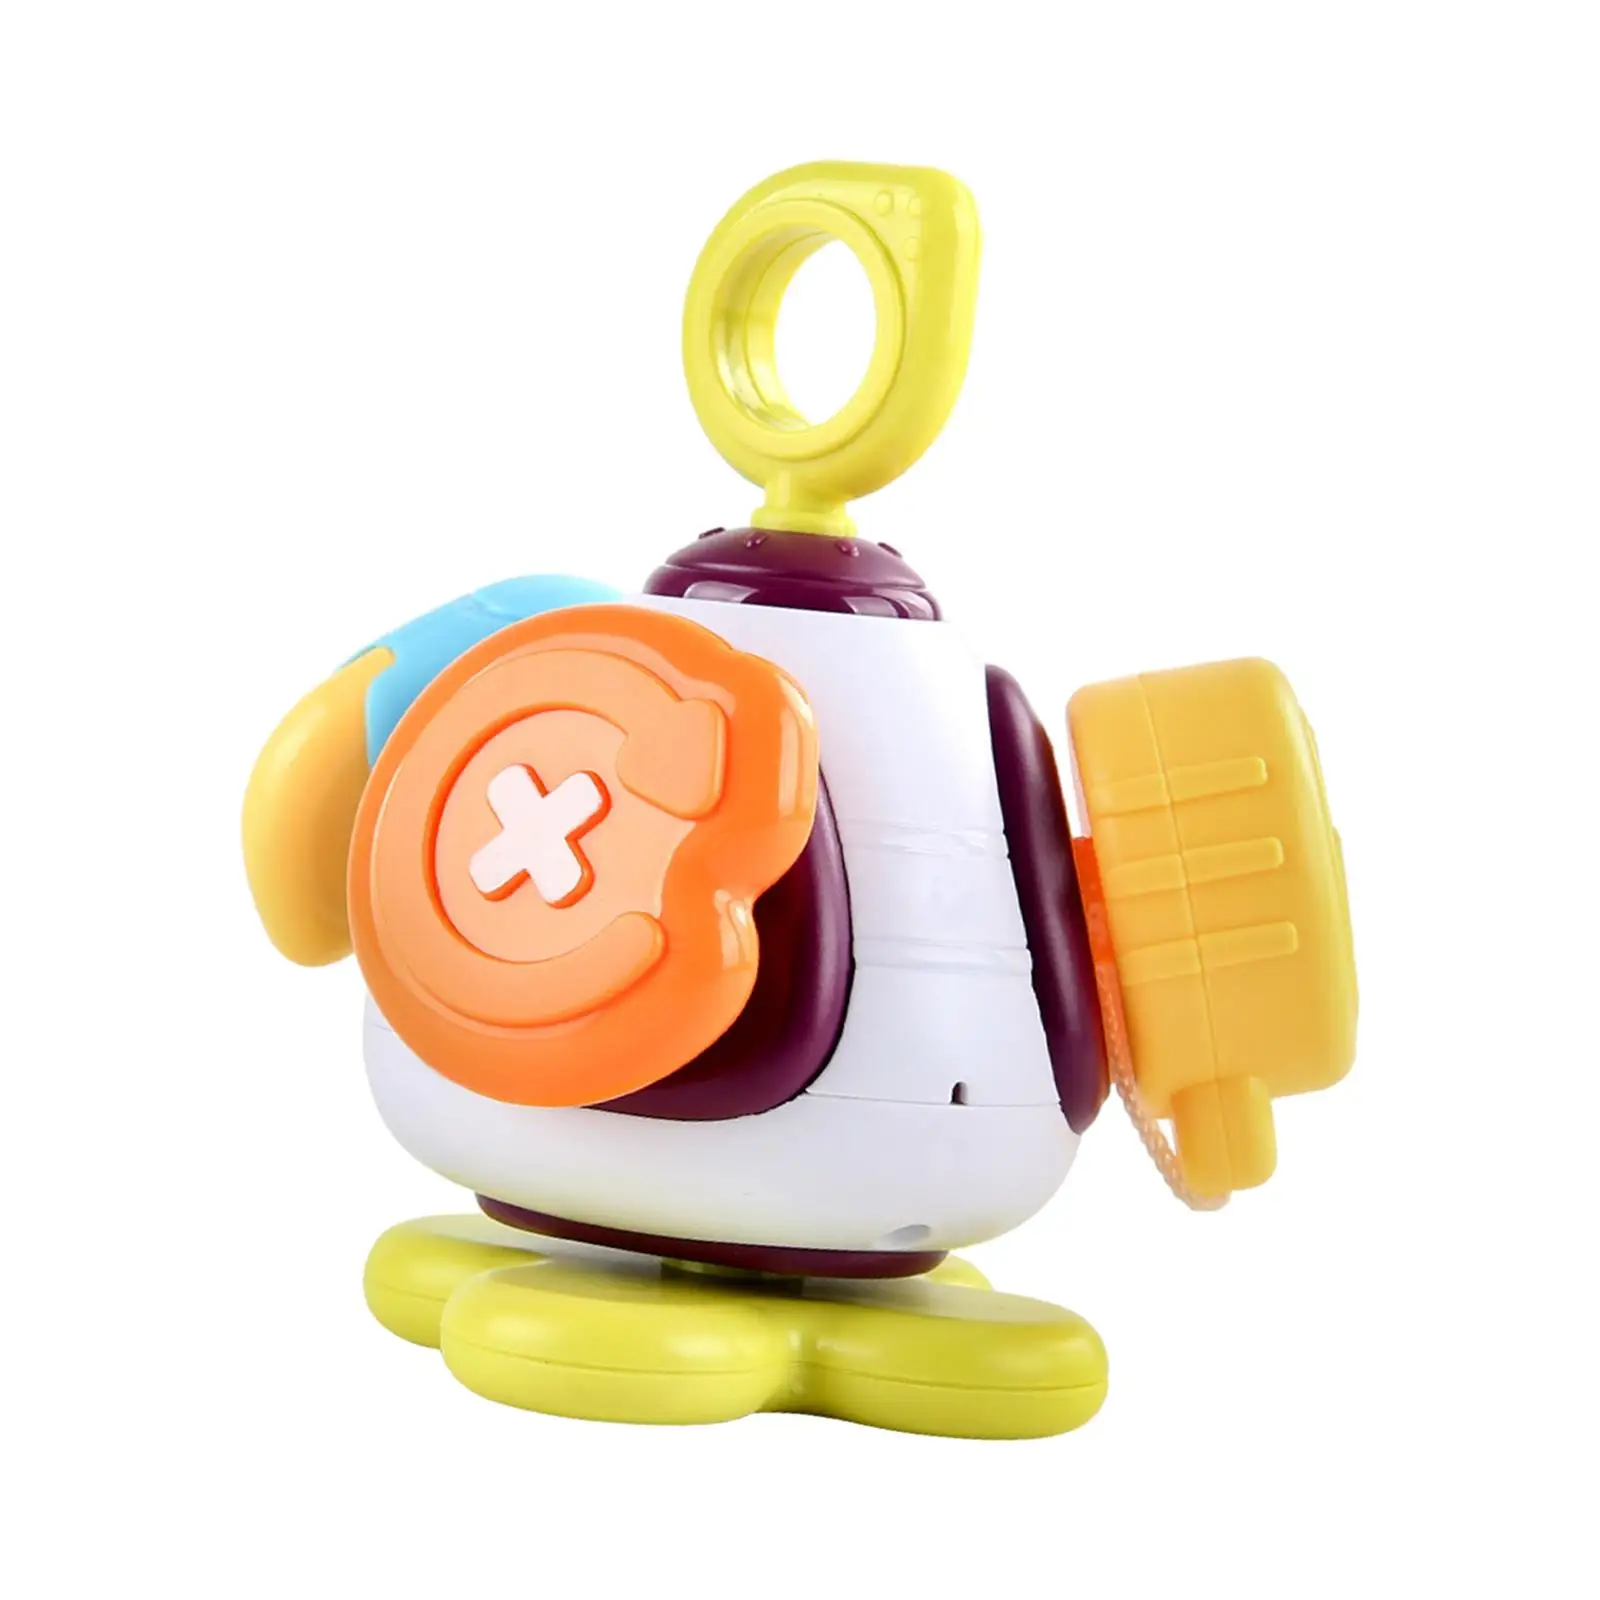 

Детская развивающая игрушка Монтессори, занятый мяч, сенсорная игрушка, Портативная Игрушка для раннего развития моторики для детей, подарок на день рождения